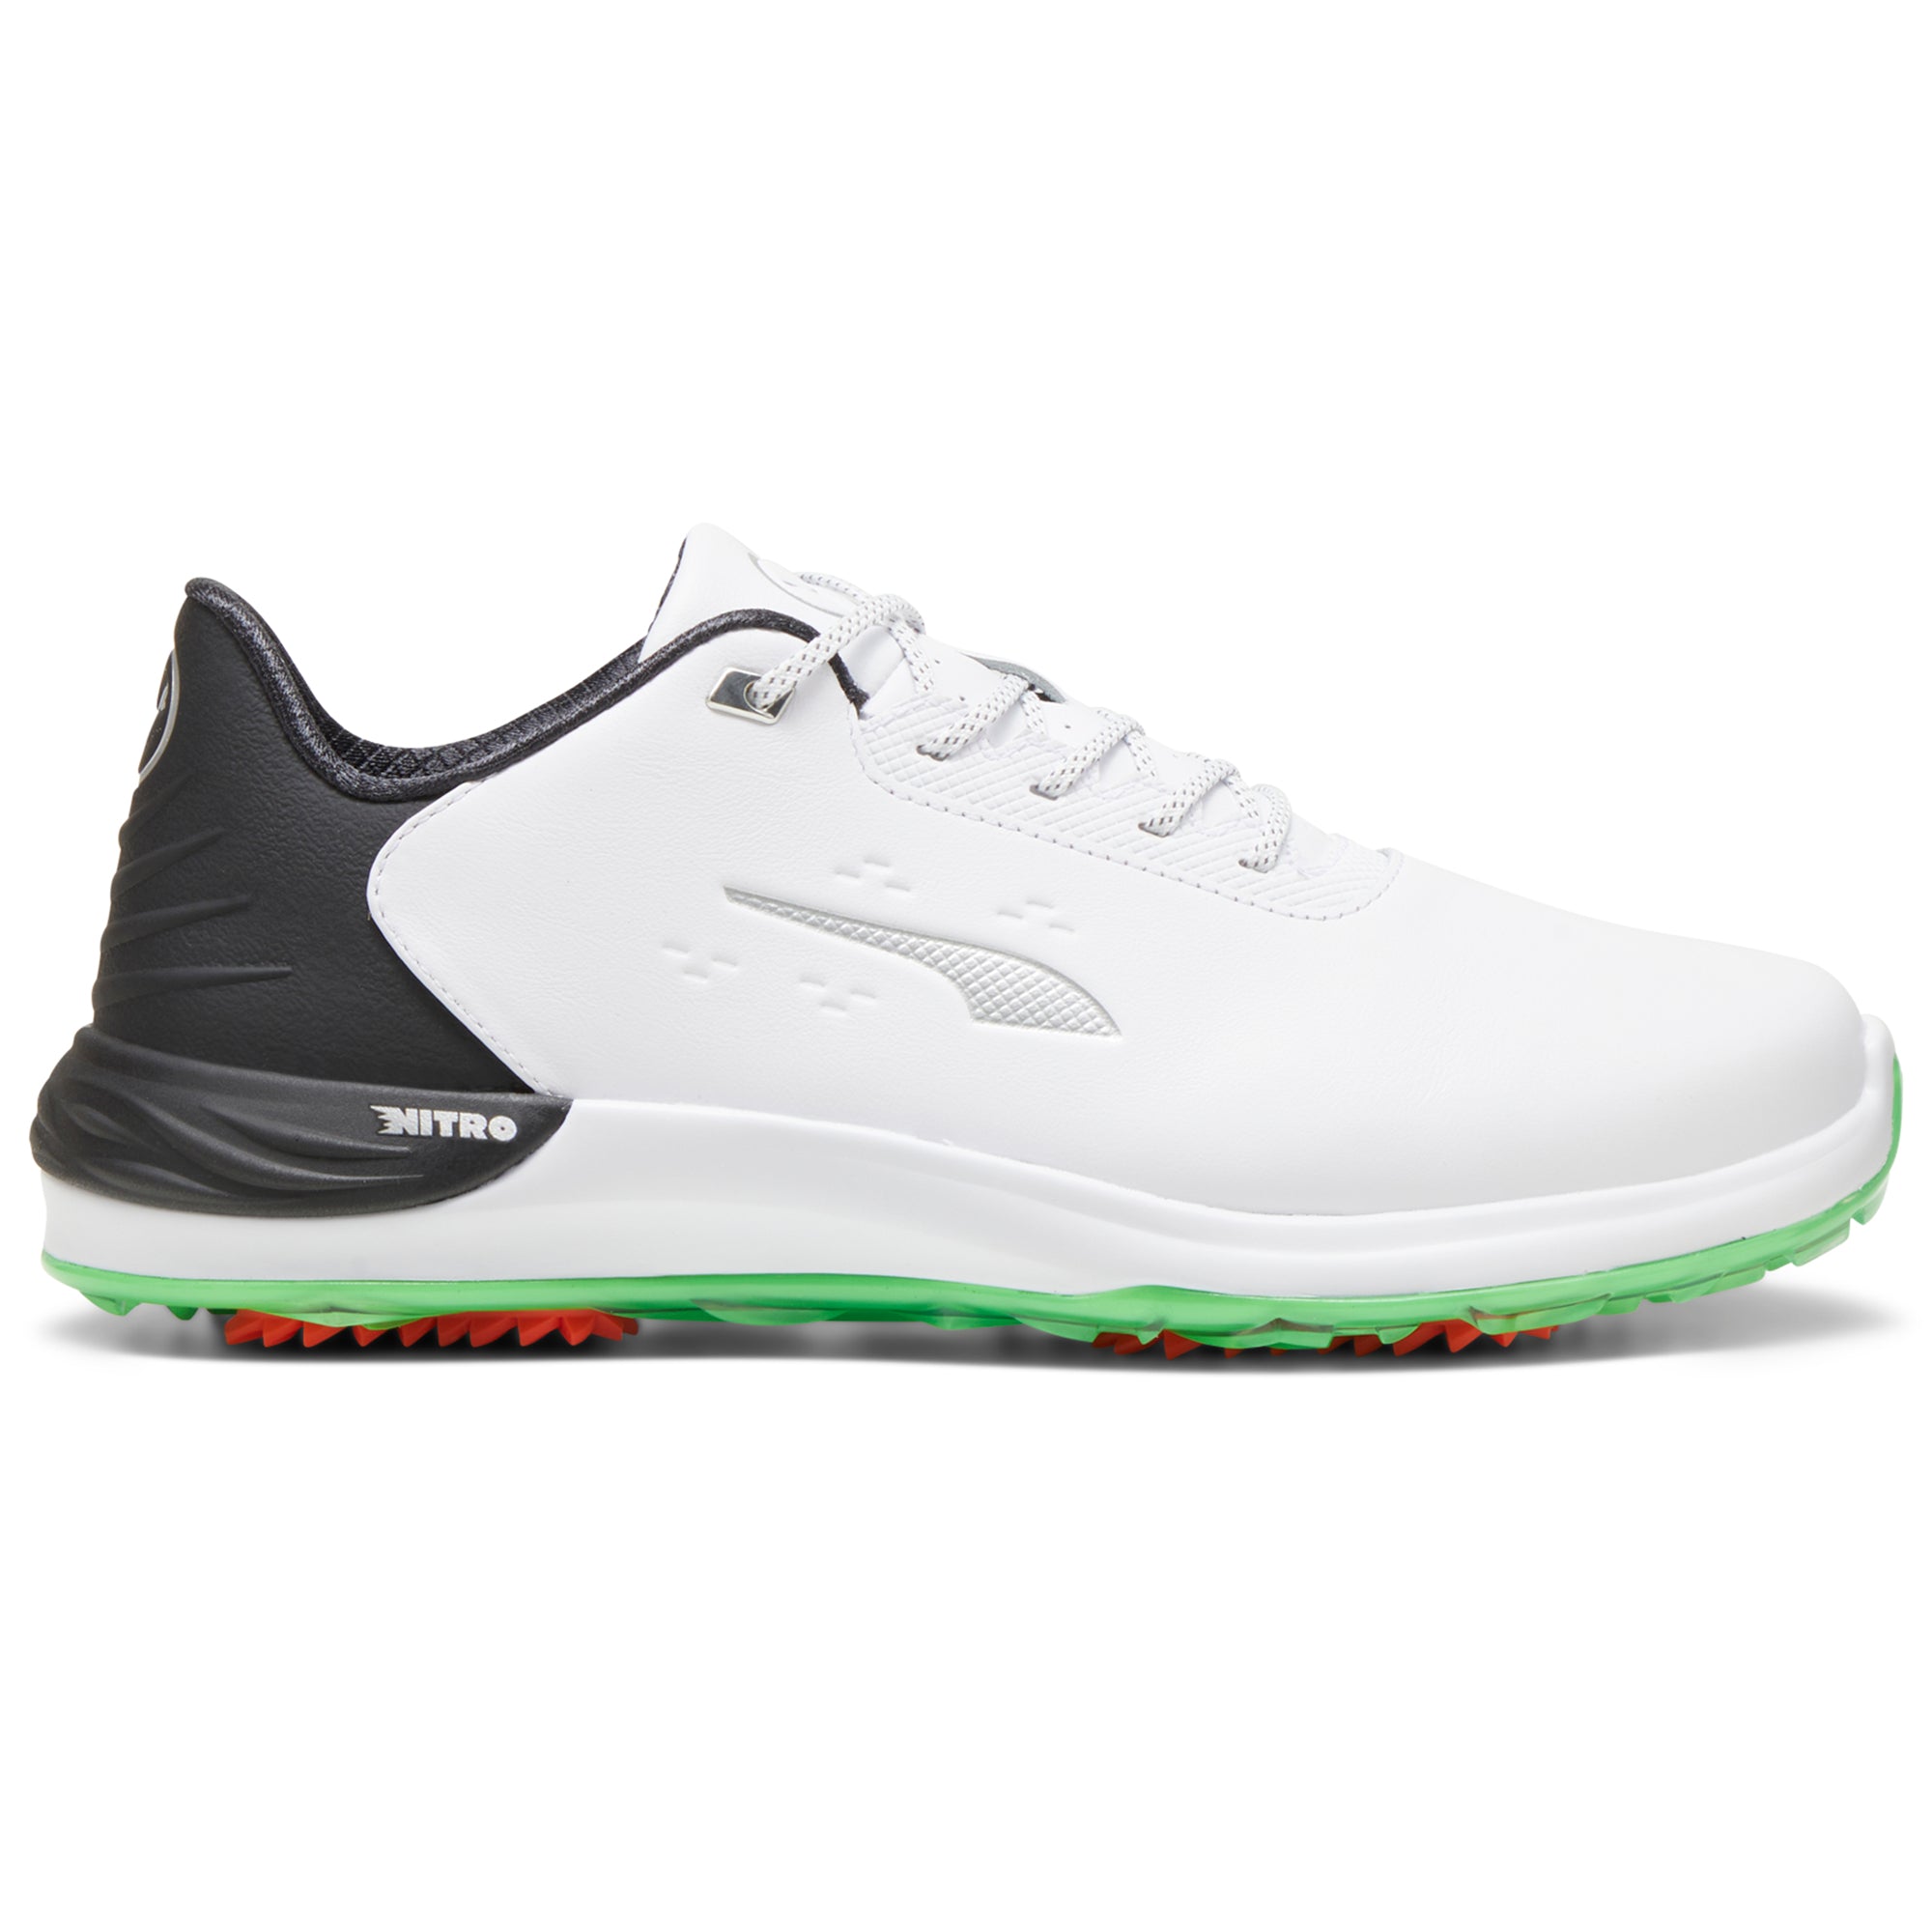 puma-phantomcat-nitro-golf-shoes-309710-puma-white-puma-black-fluro-green-01